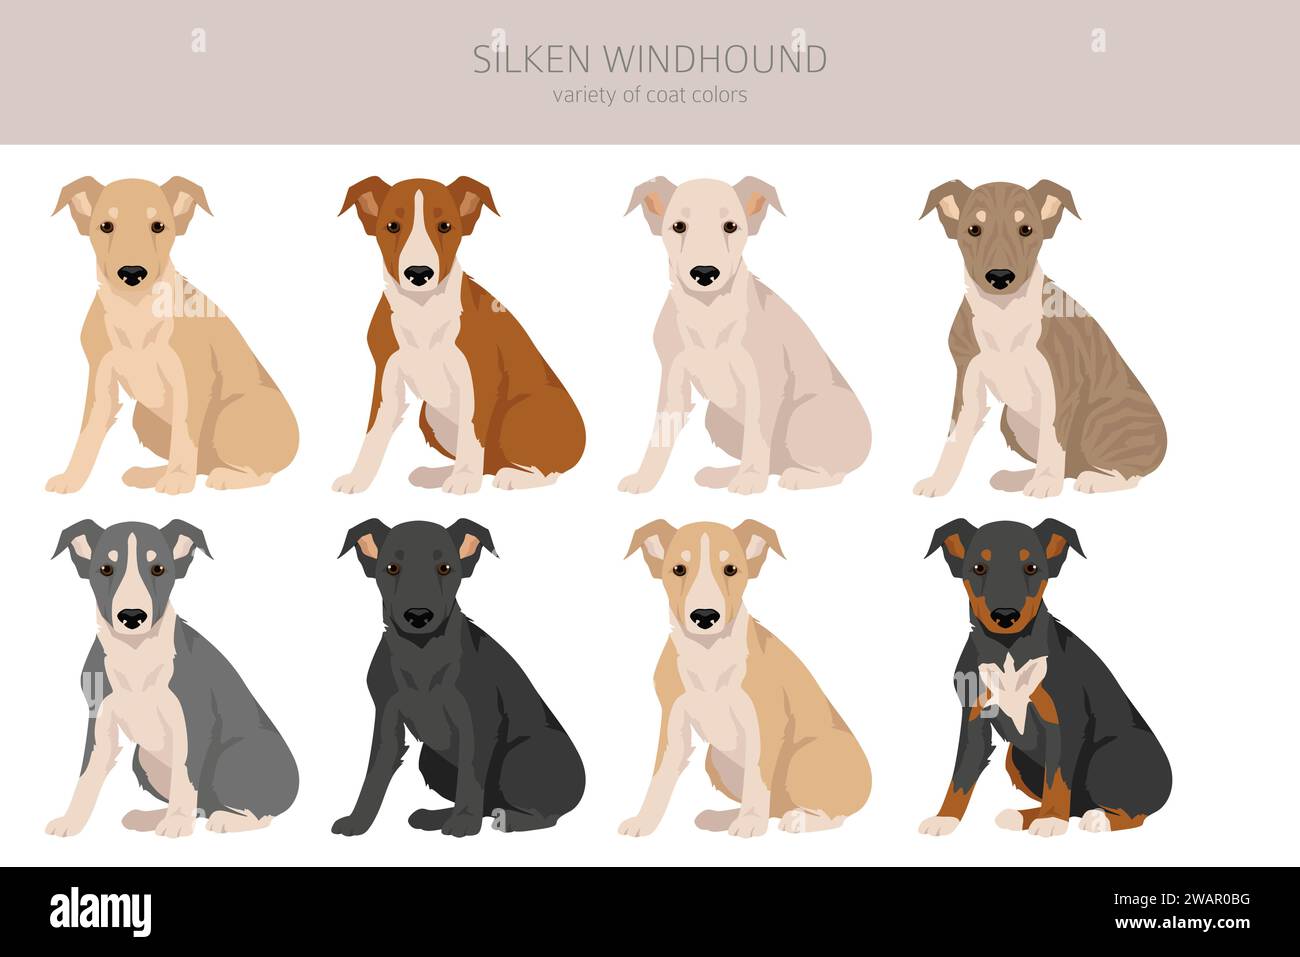 Clipart des chiots Silken Windhound. Toutes les couleurs de manteau définies. Infographie des caractéristiques de toutes les races de chiens. Illustration vectorielle Illustration de Vecteur